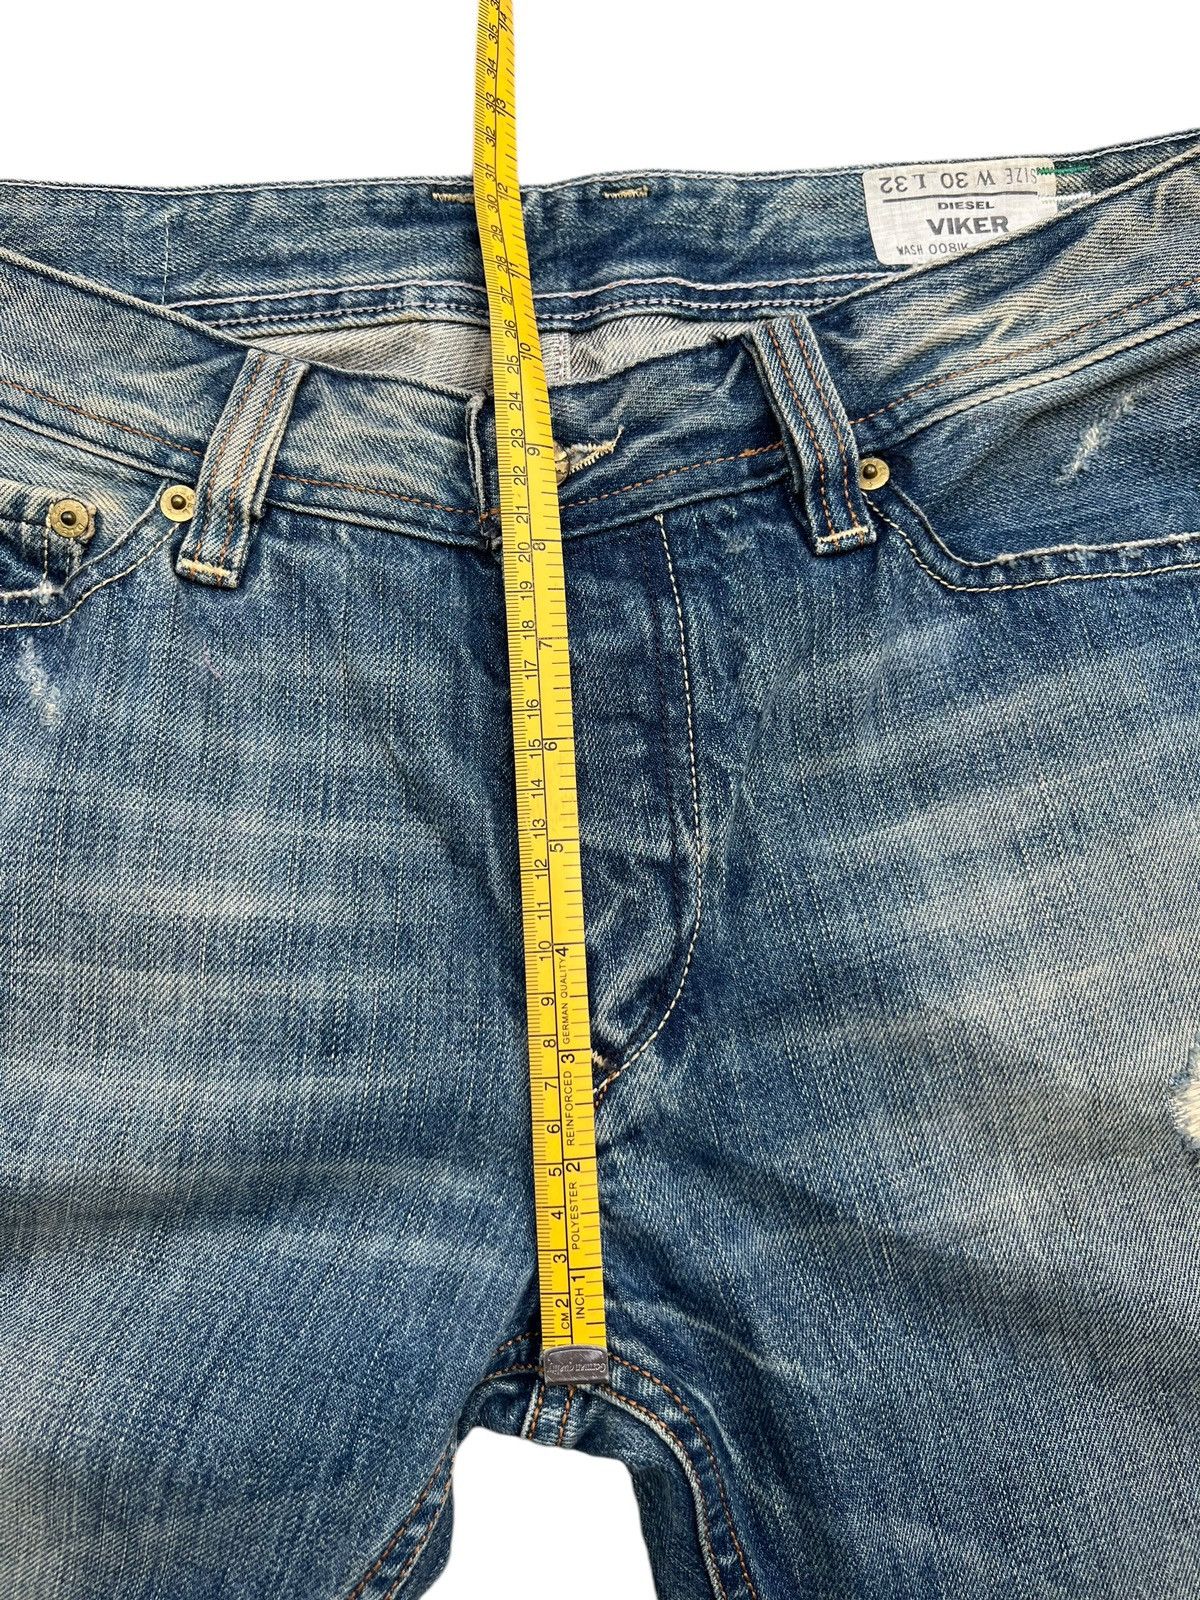 Diesel Mudwash Distressed Straightcut Denim Jeans 33x32 - 15